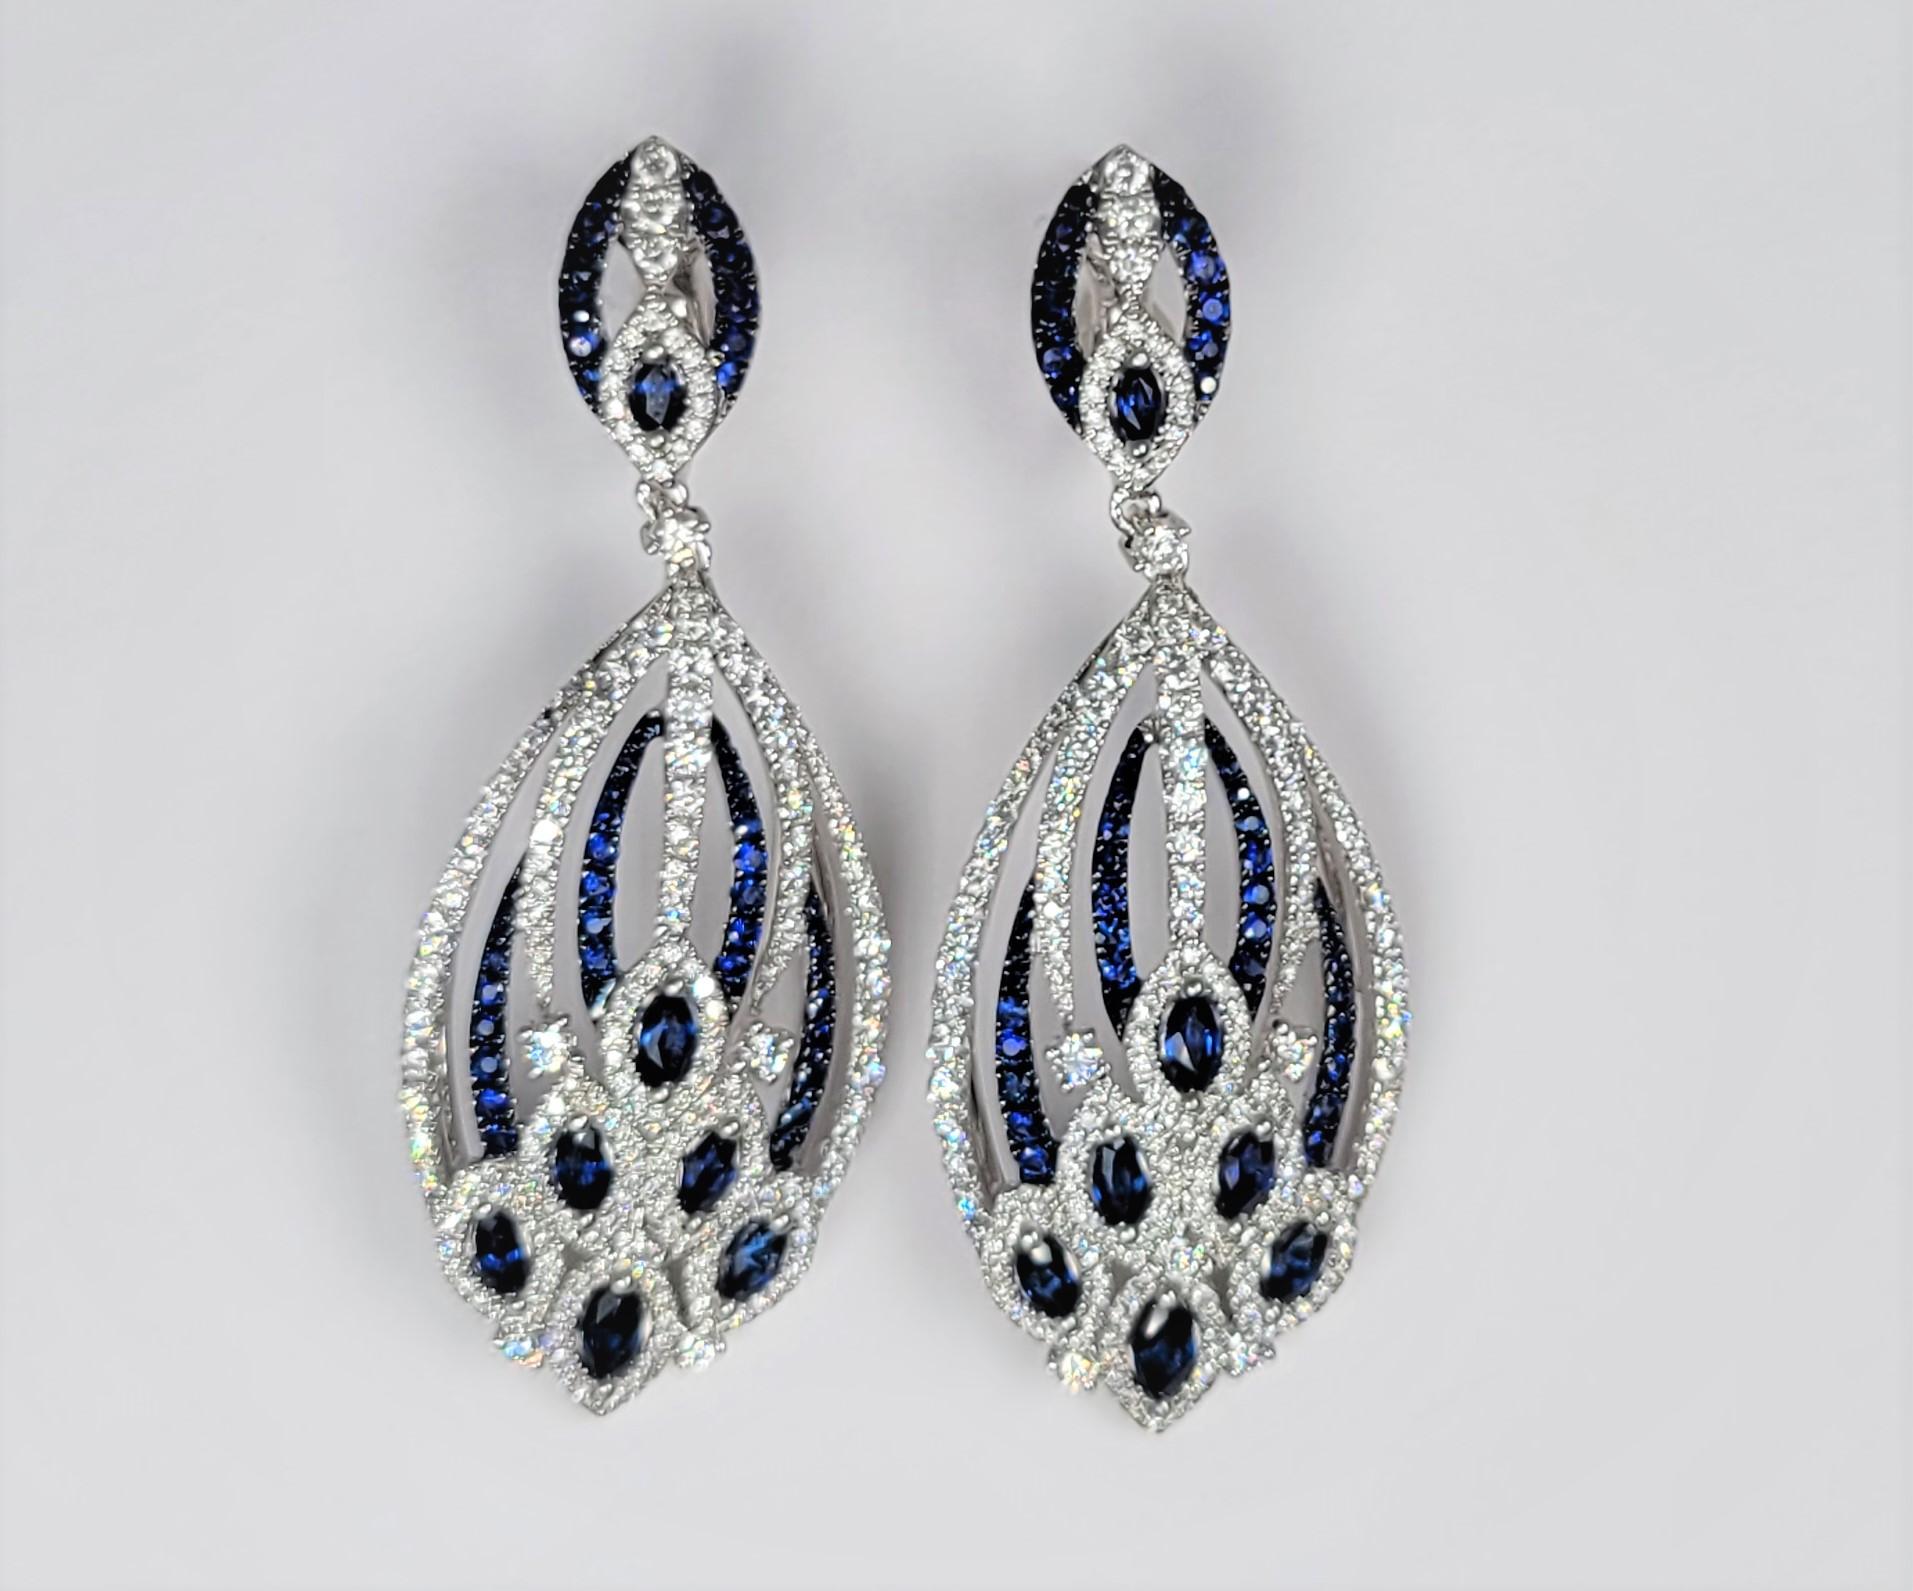 Atemberaubende Ohrringe mit Diamanten und blauen Saphiren aus 18 Karat Weißgold.  Schwarzes Rhodium akzentuiert die blauen Saphire.  Gestempelt LTJ.